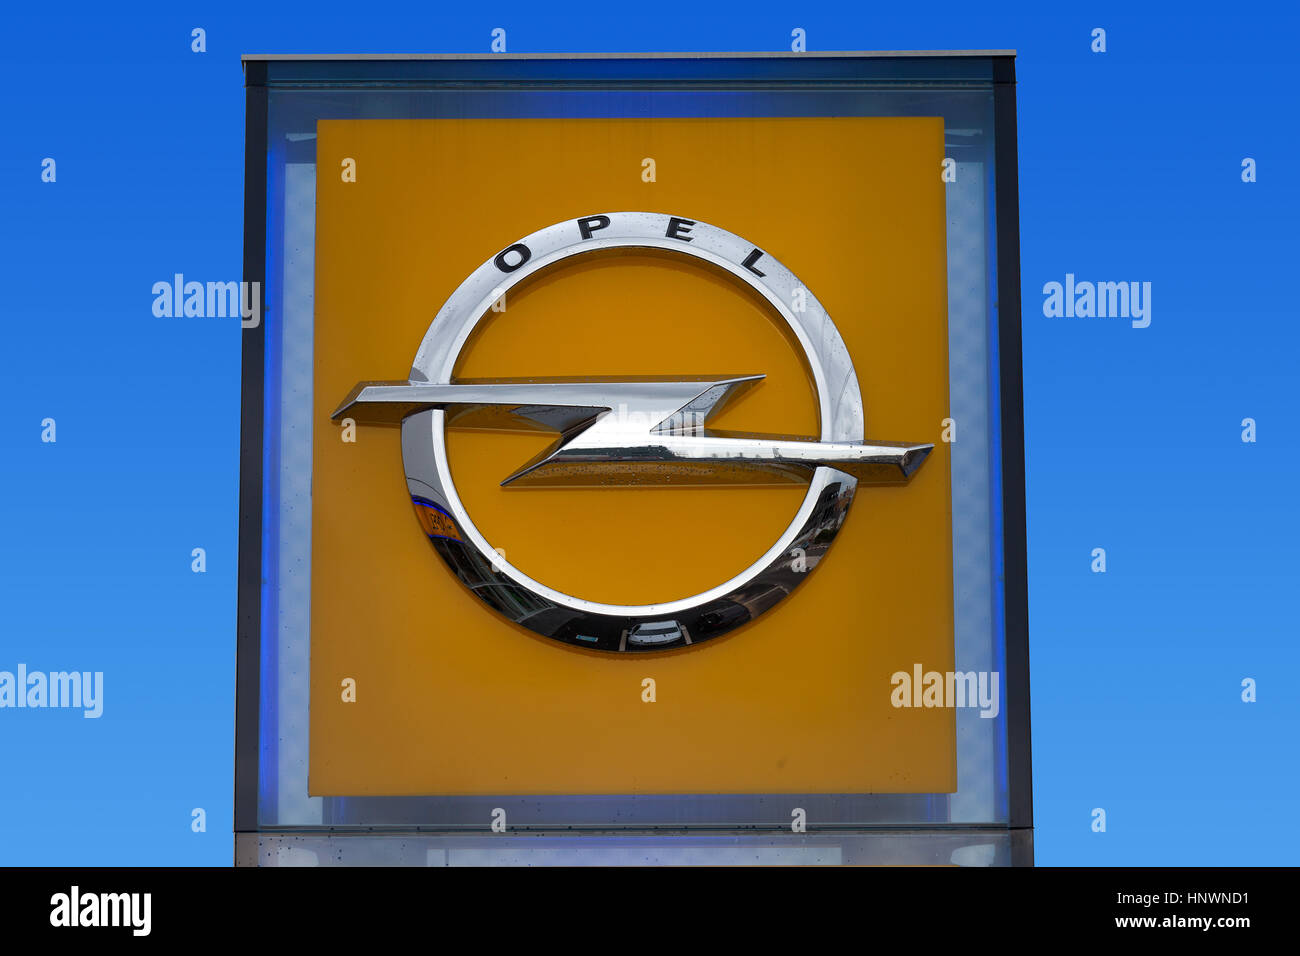 Opel signe en un concessionnaire local. Opel est un constructeur automobile allemand ayant son siège en Allemagne, filiale du groupe américain General Motors. Banque D'Images